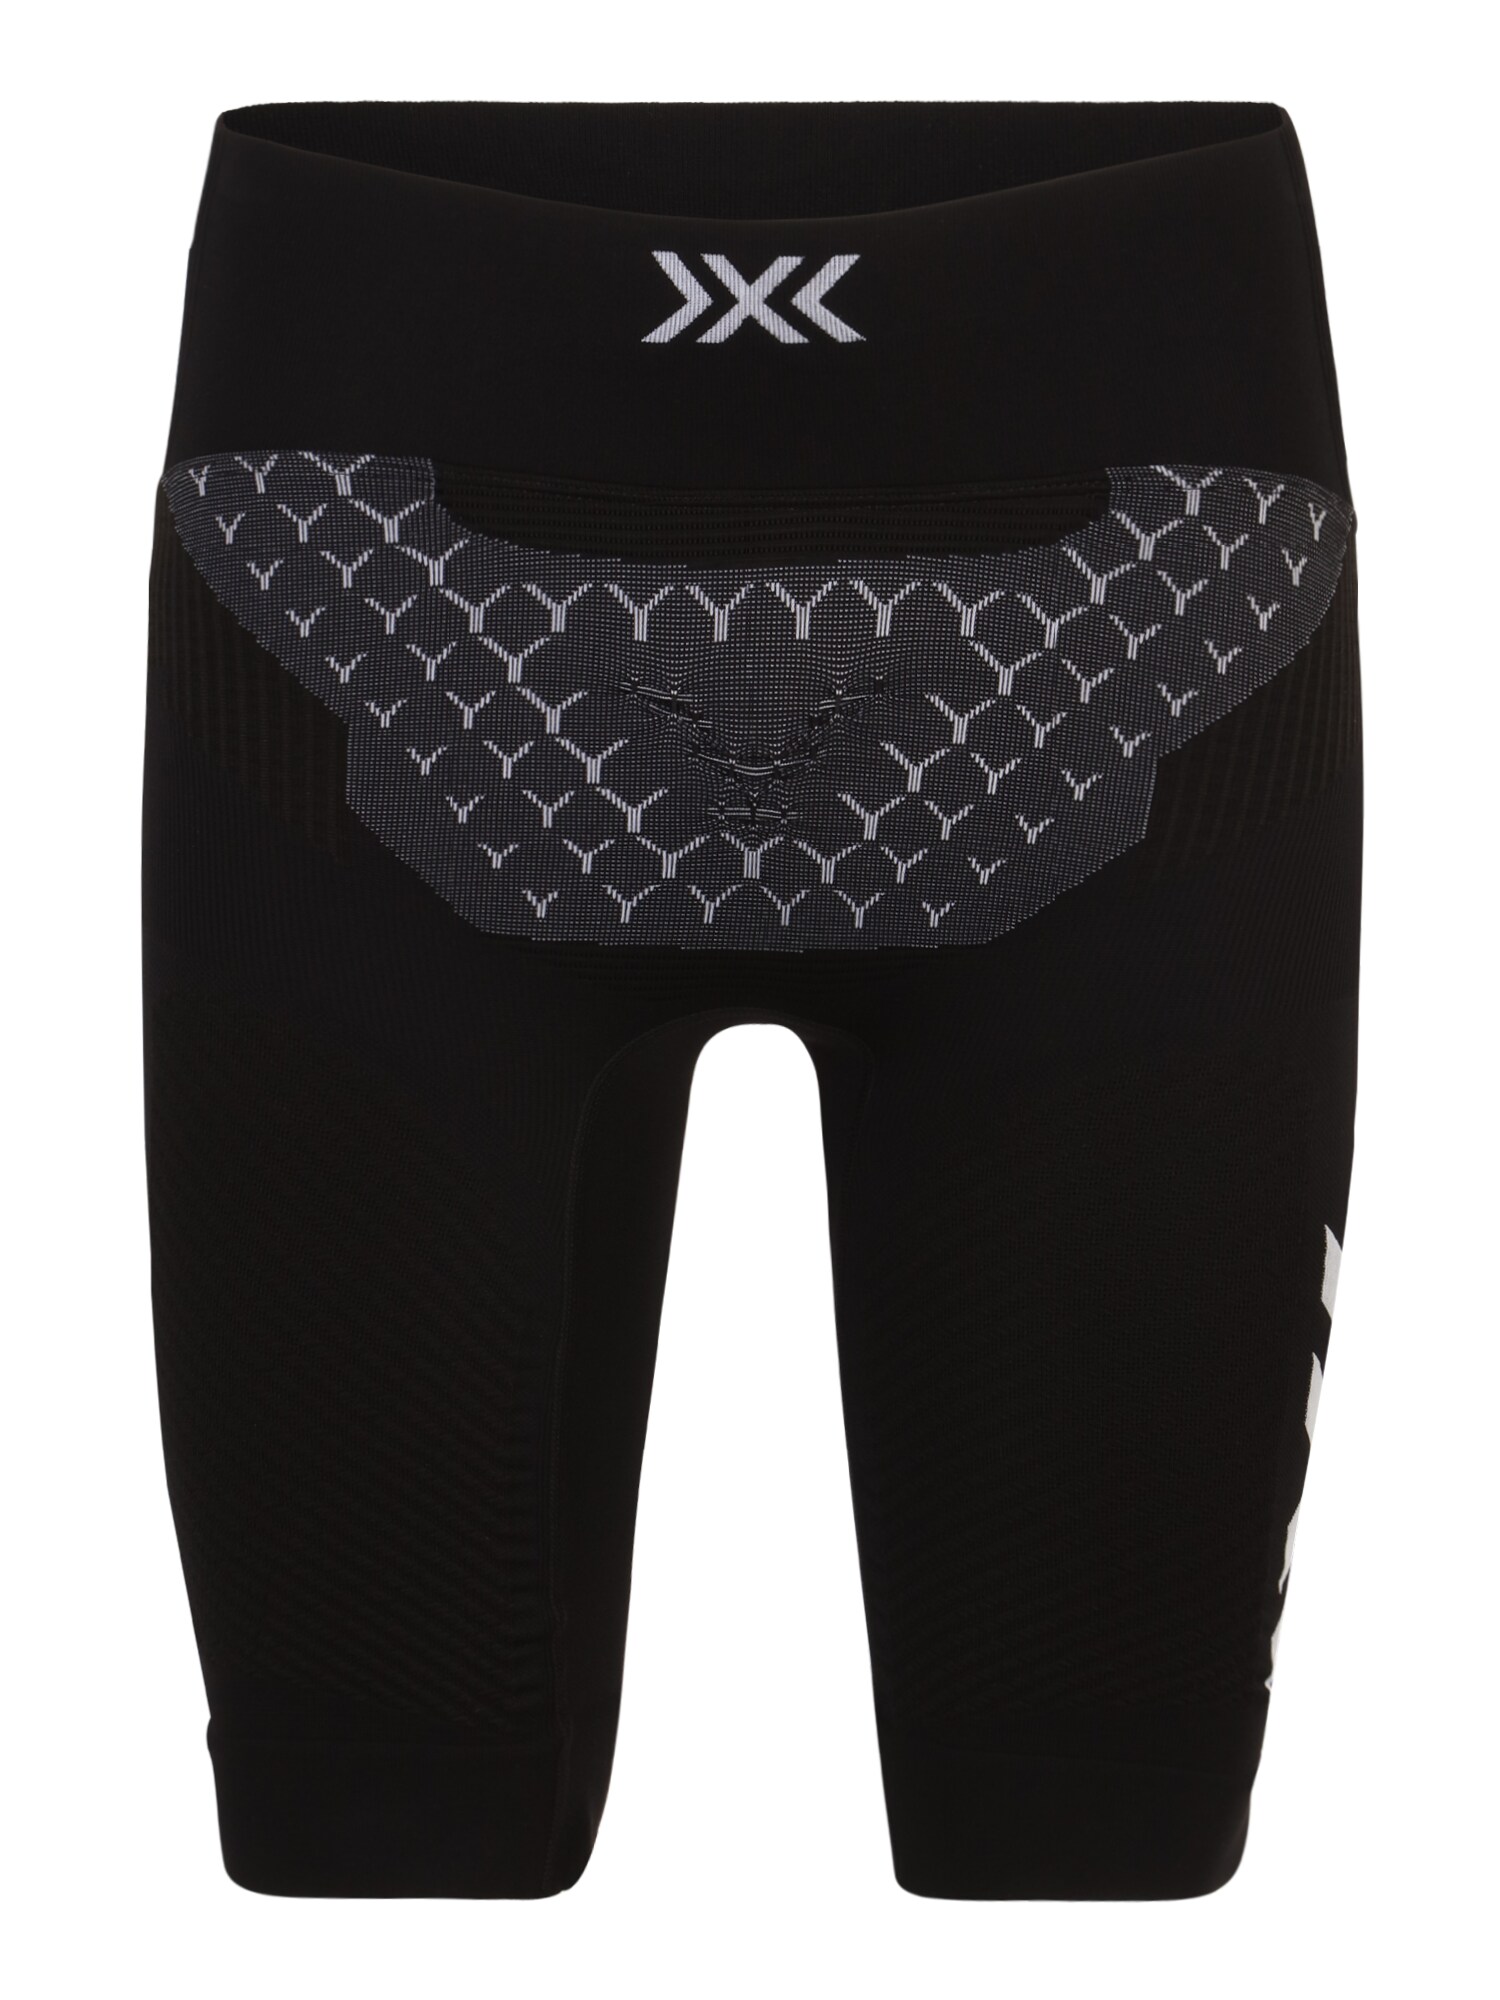 X-BIONIC Sportinės kelnės juoda / balta